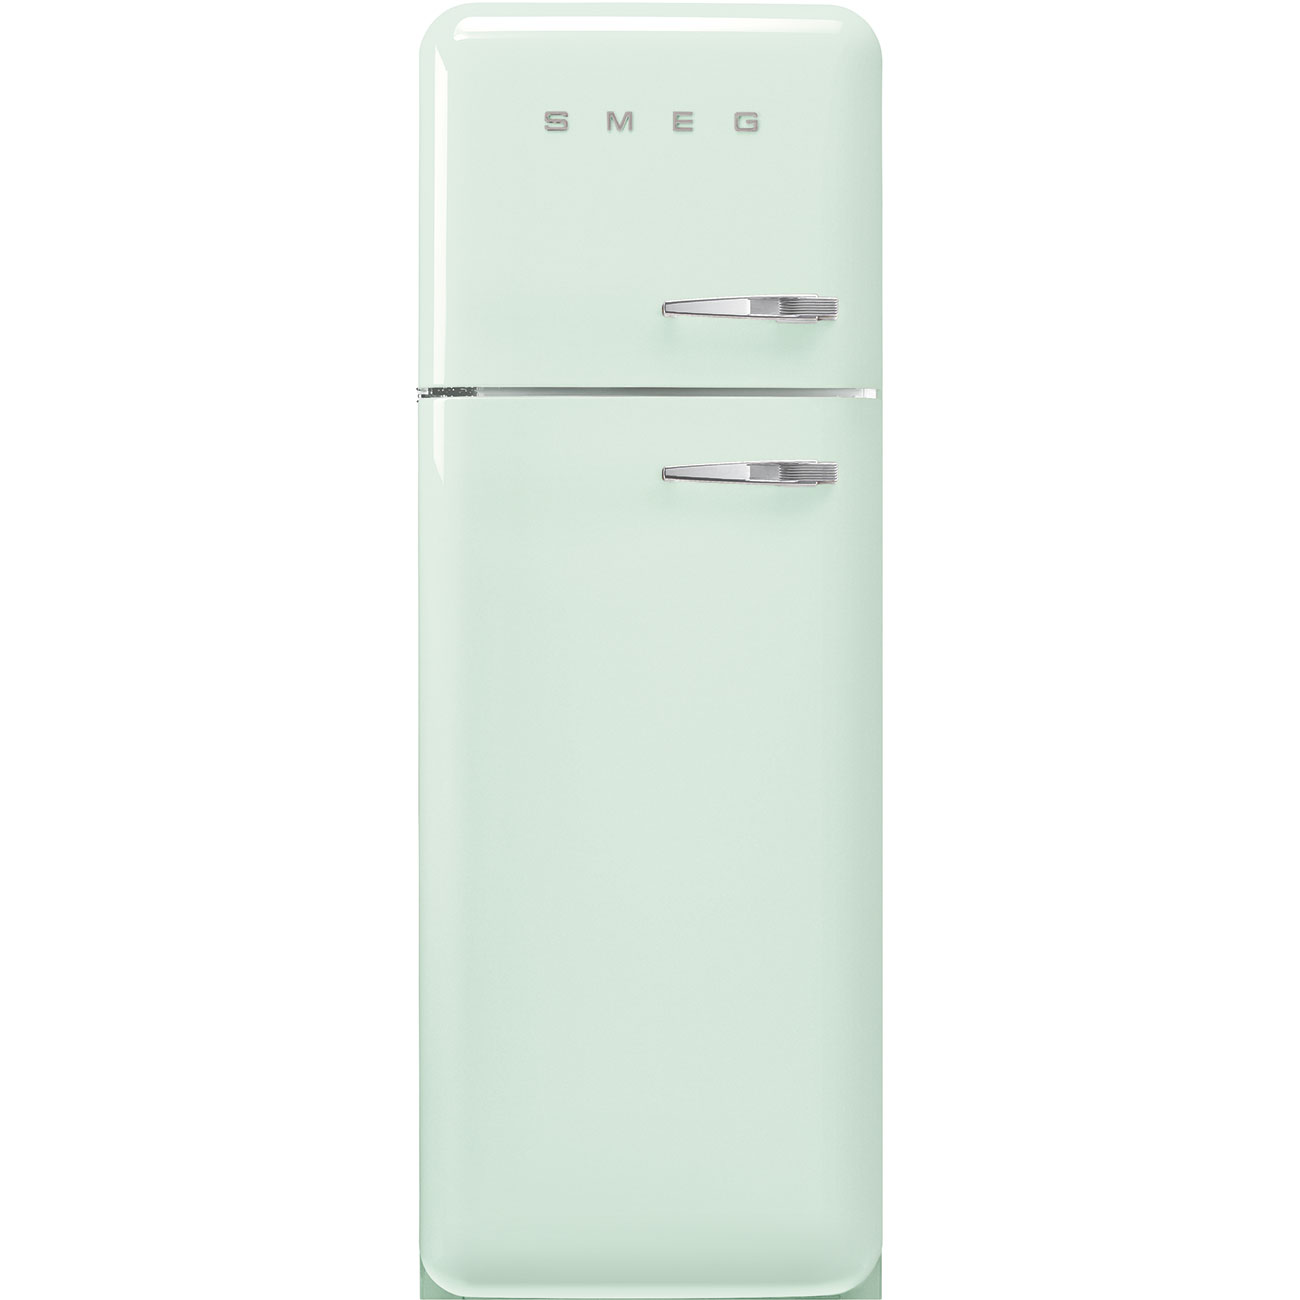 Watergroen koelkast - Smeg_1